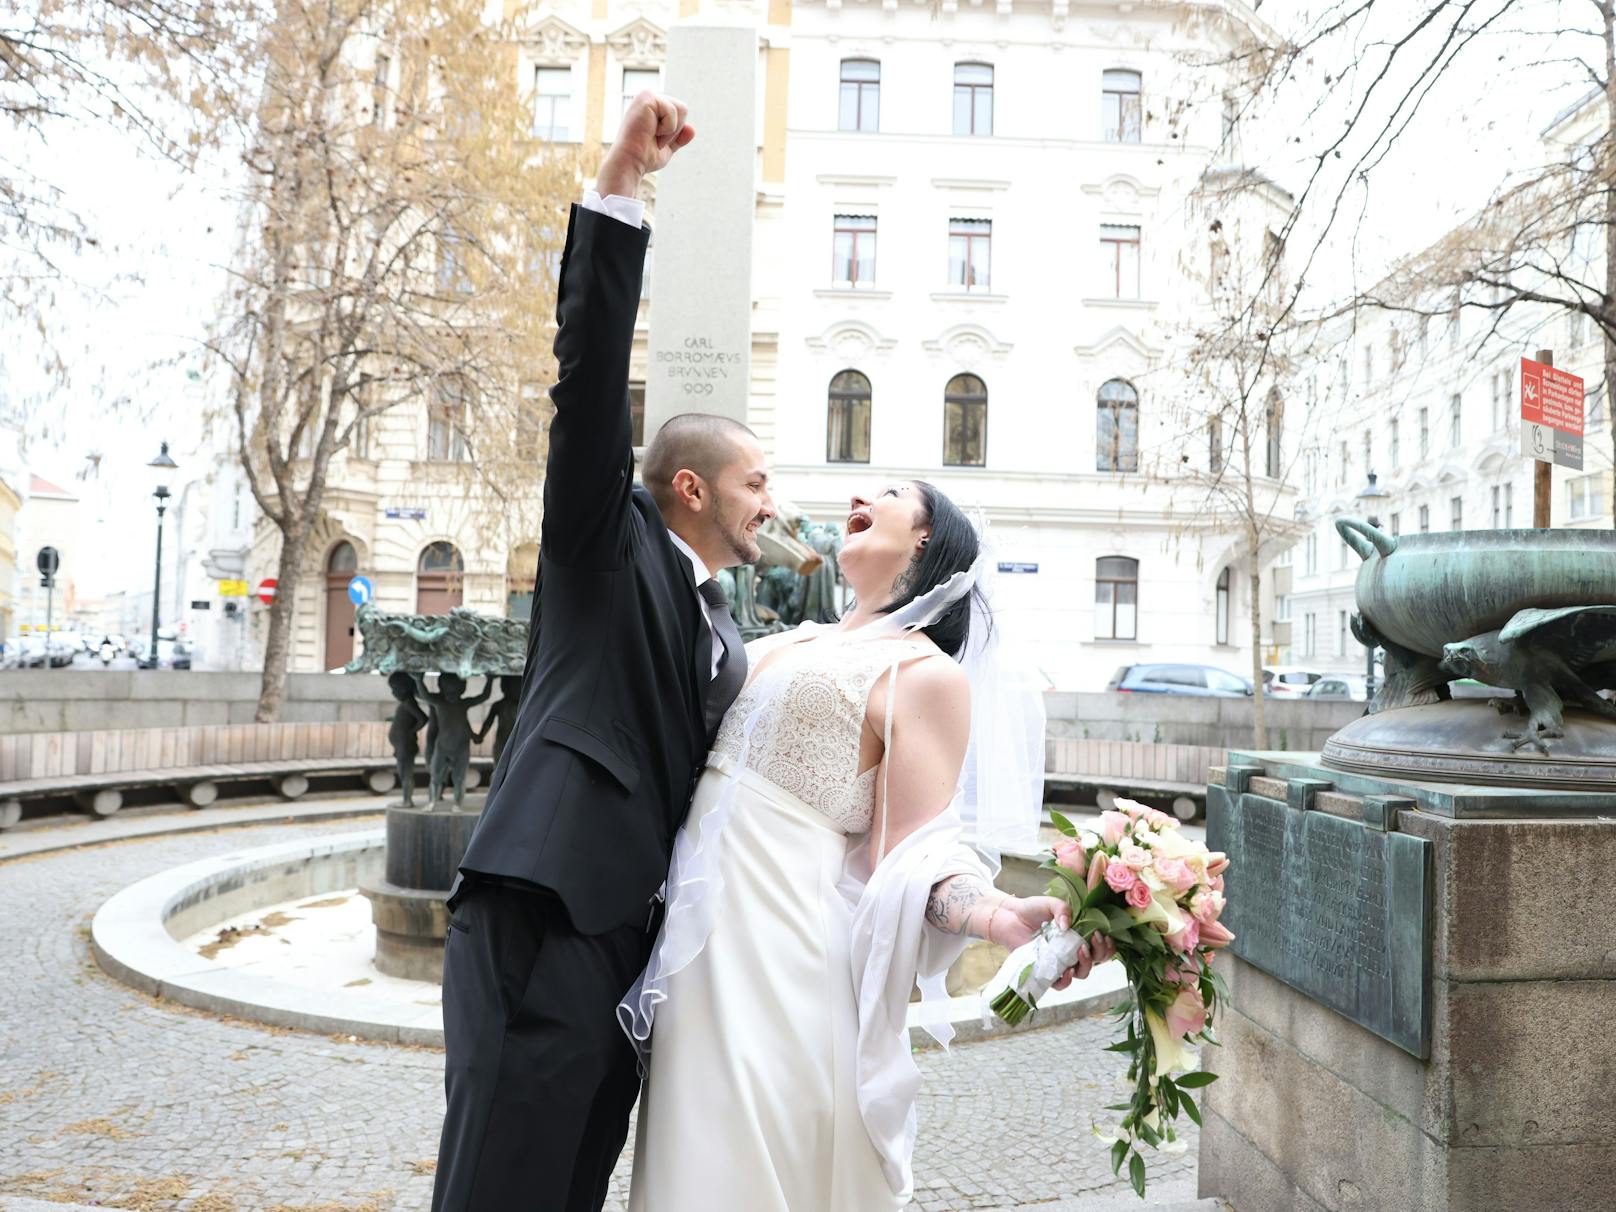 In Wien haben sich am 22.2.2022 einige Paare das Jawort gegeben. Auch&nbsp;Rebecca (28) und Alfred (29) haben sich getraut.